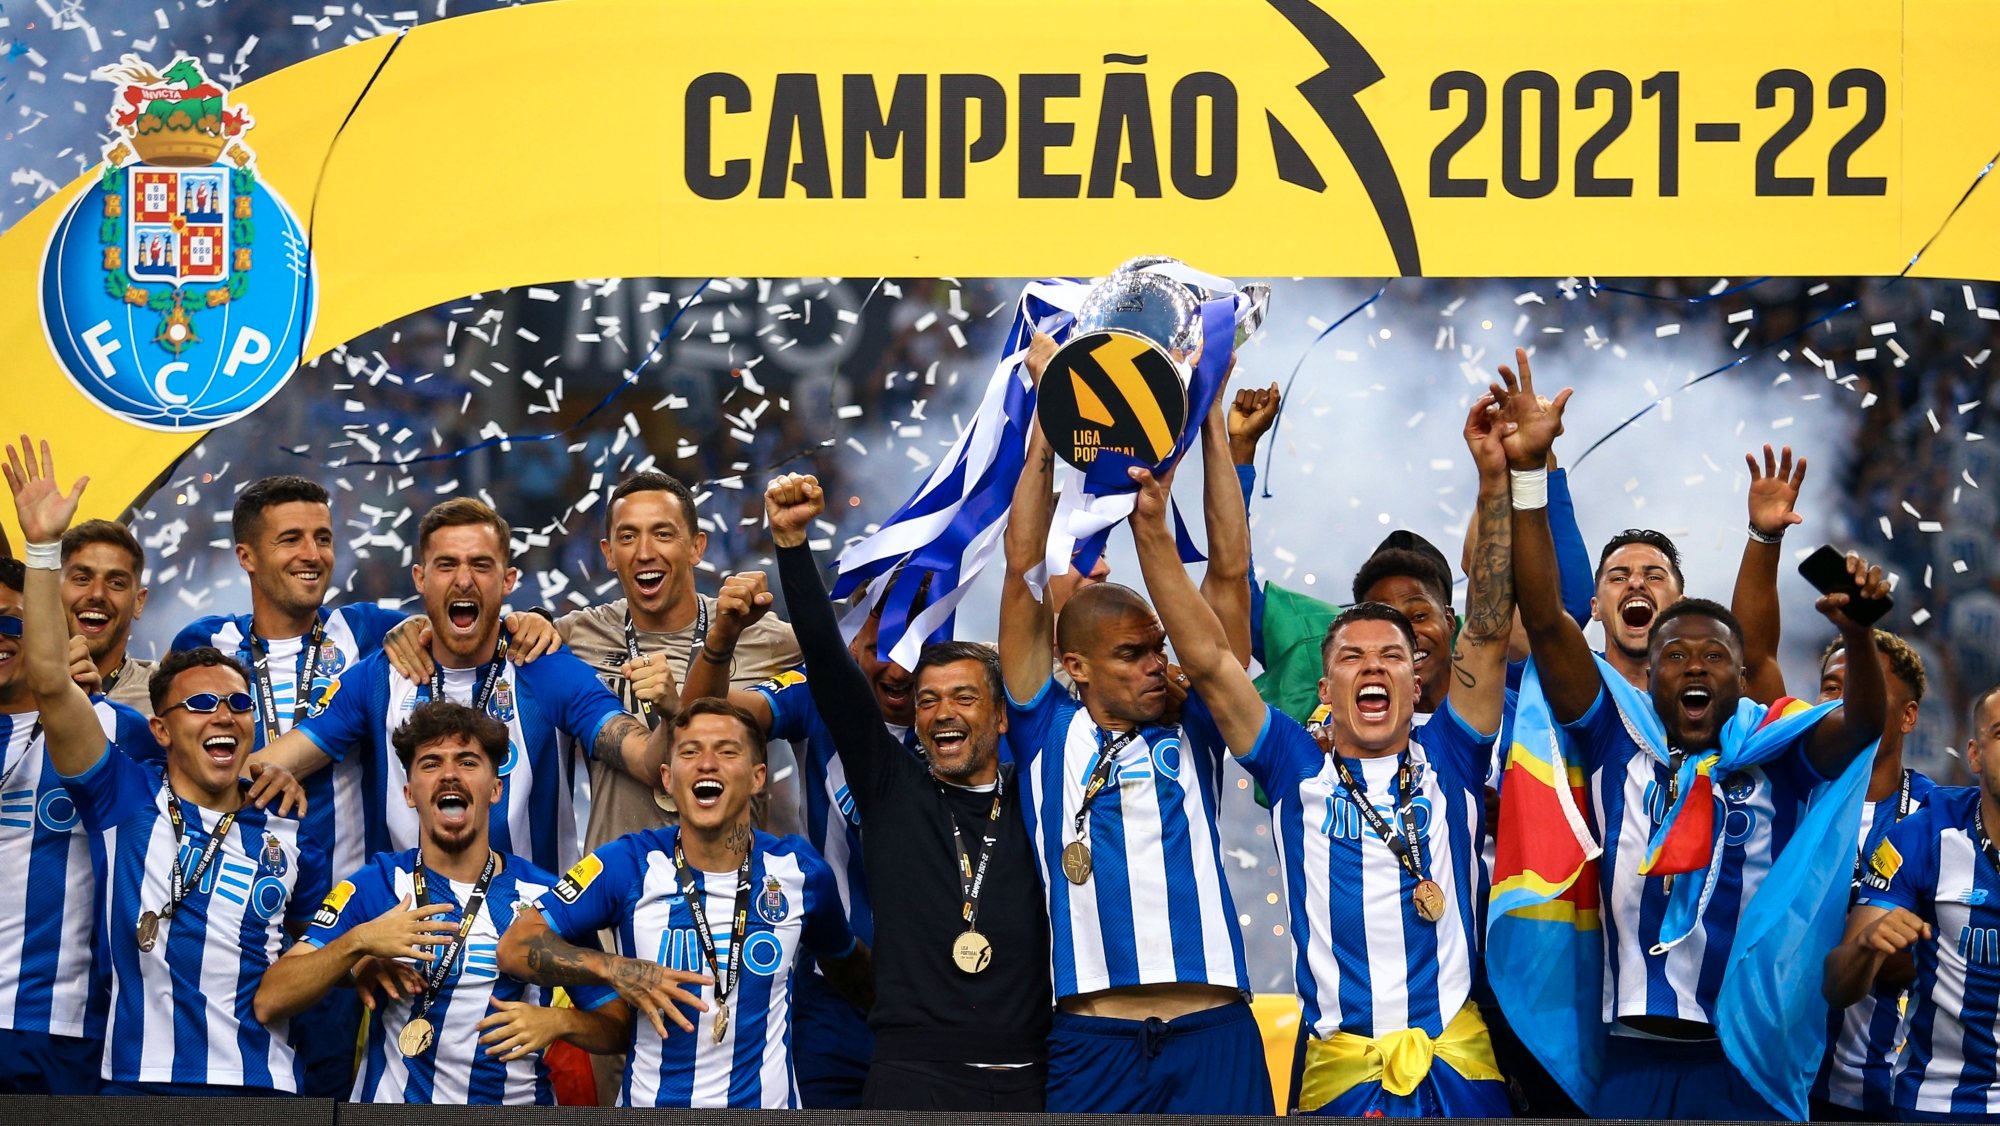 Pepe recebeu taça de campeão na festa do FC Porto após vitória frente ao Estoril que carimbou 30.º Campeonato